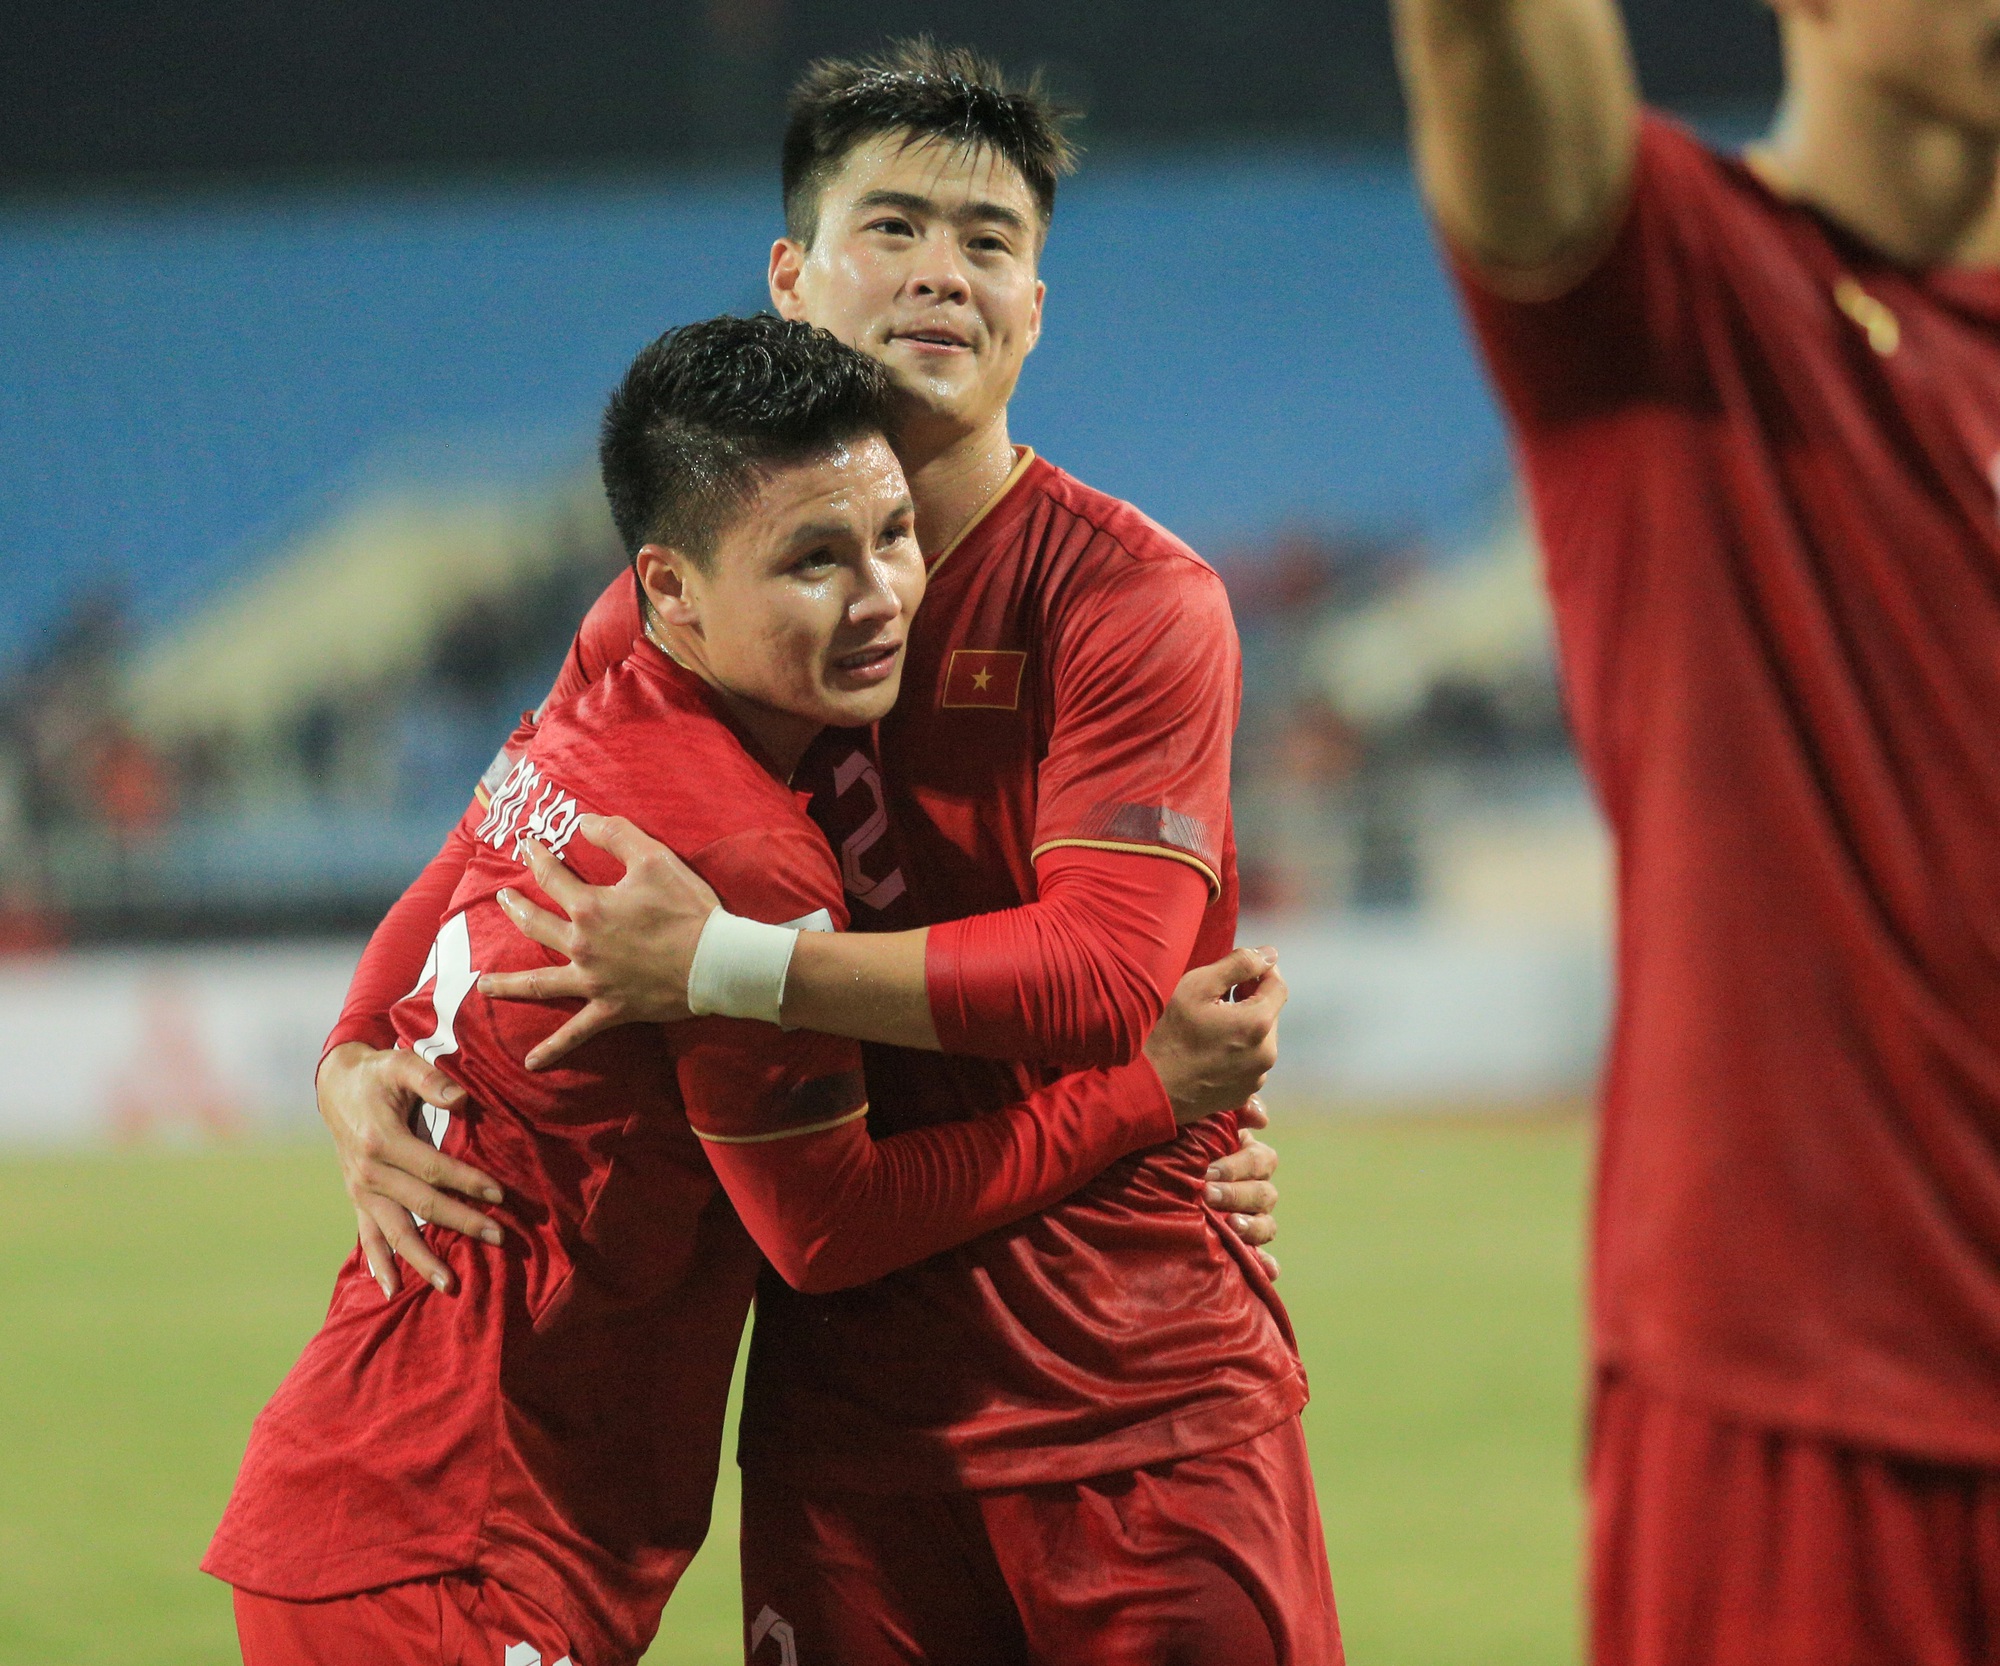 Quế Ngọc Hải ăn mừng theo phong cách của Ronaldo khi ghi bàn cho tuyển Việt Nam - Ảnh 6.